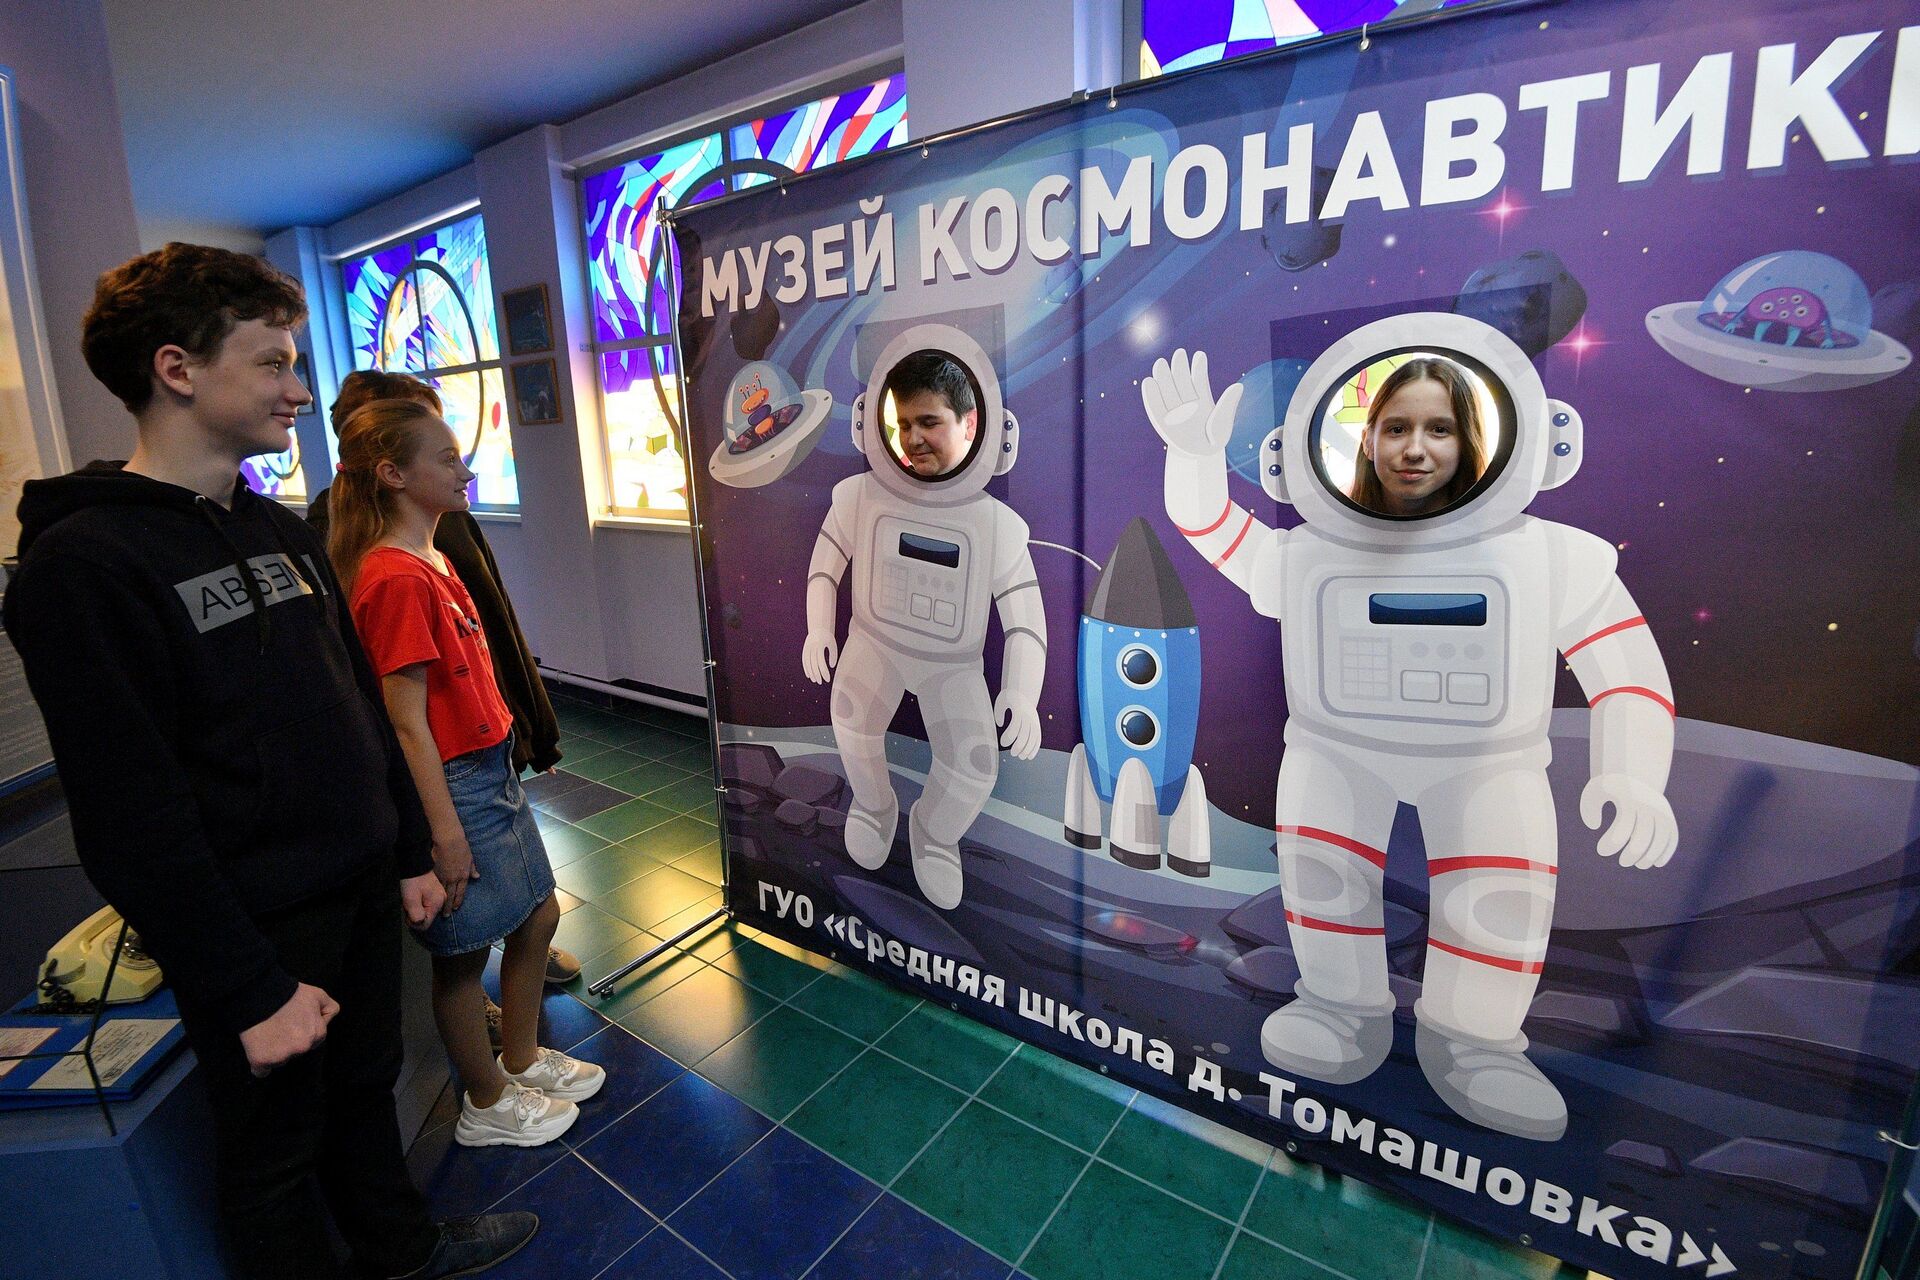 Теперь не идут в космонавты: в Томашовке они закончились на Климуке - Sputnik Беларусь, 1920, 11.04.2021